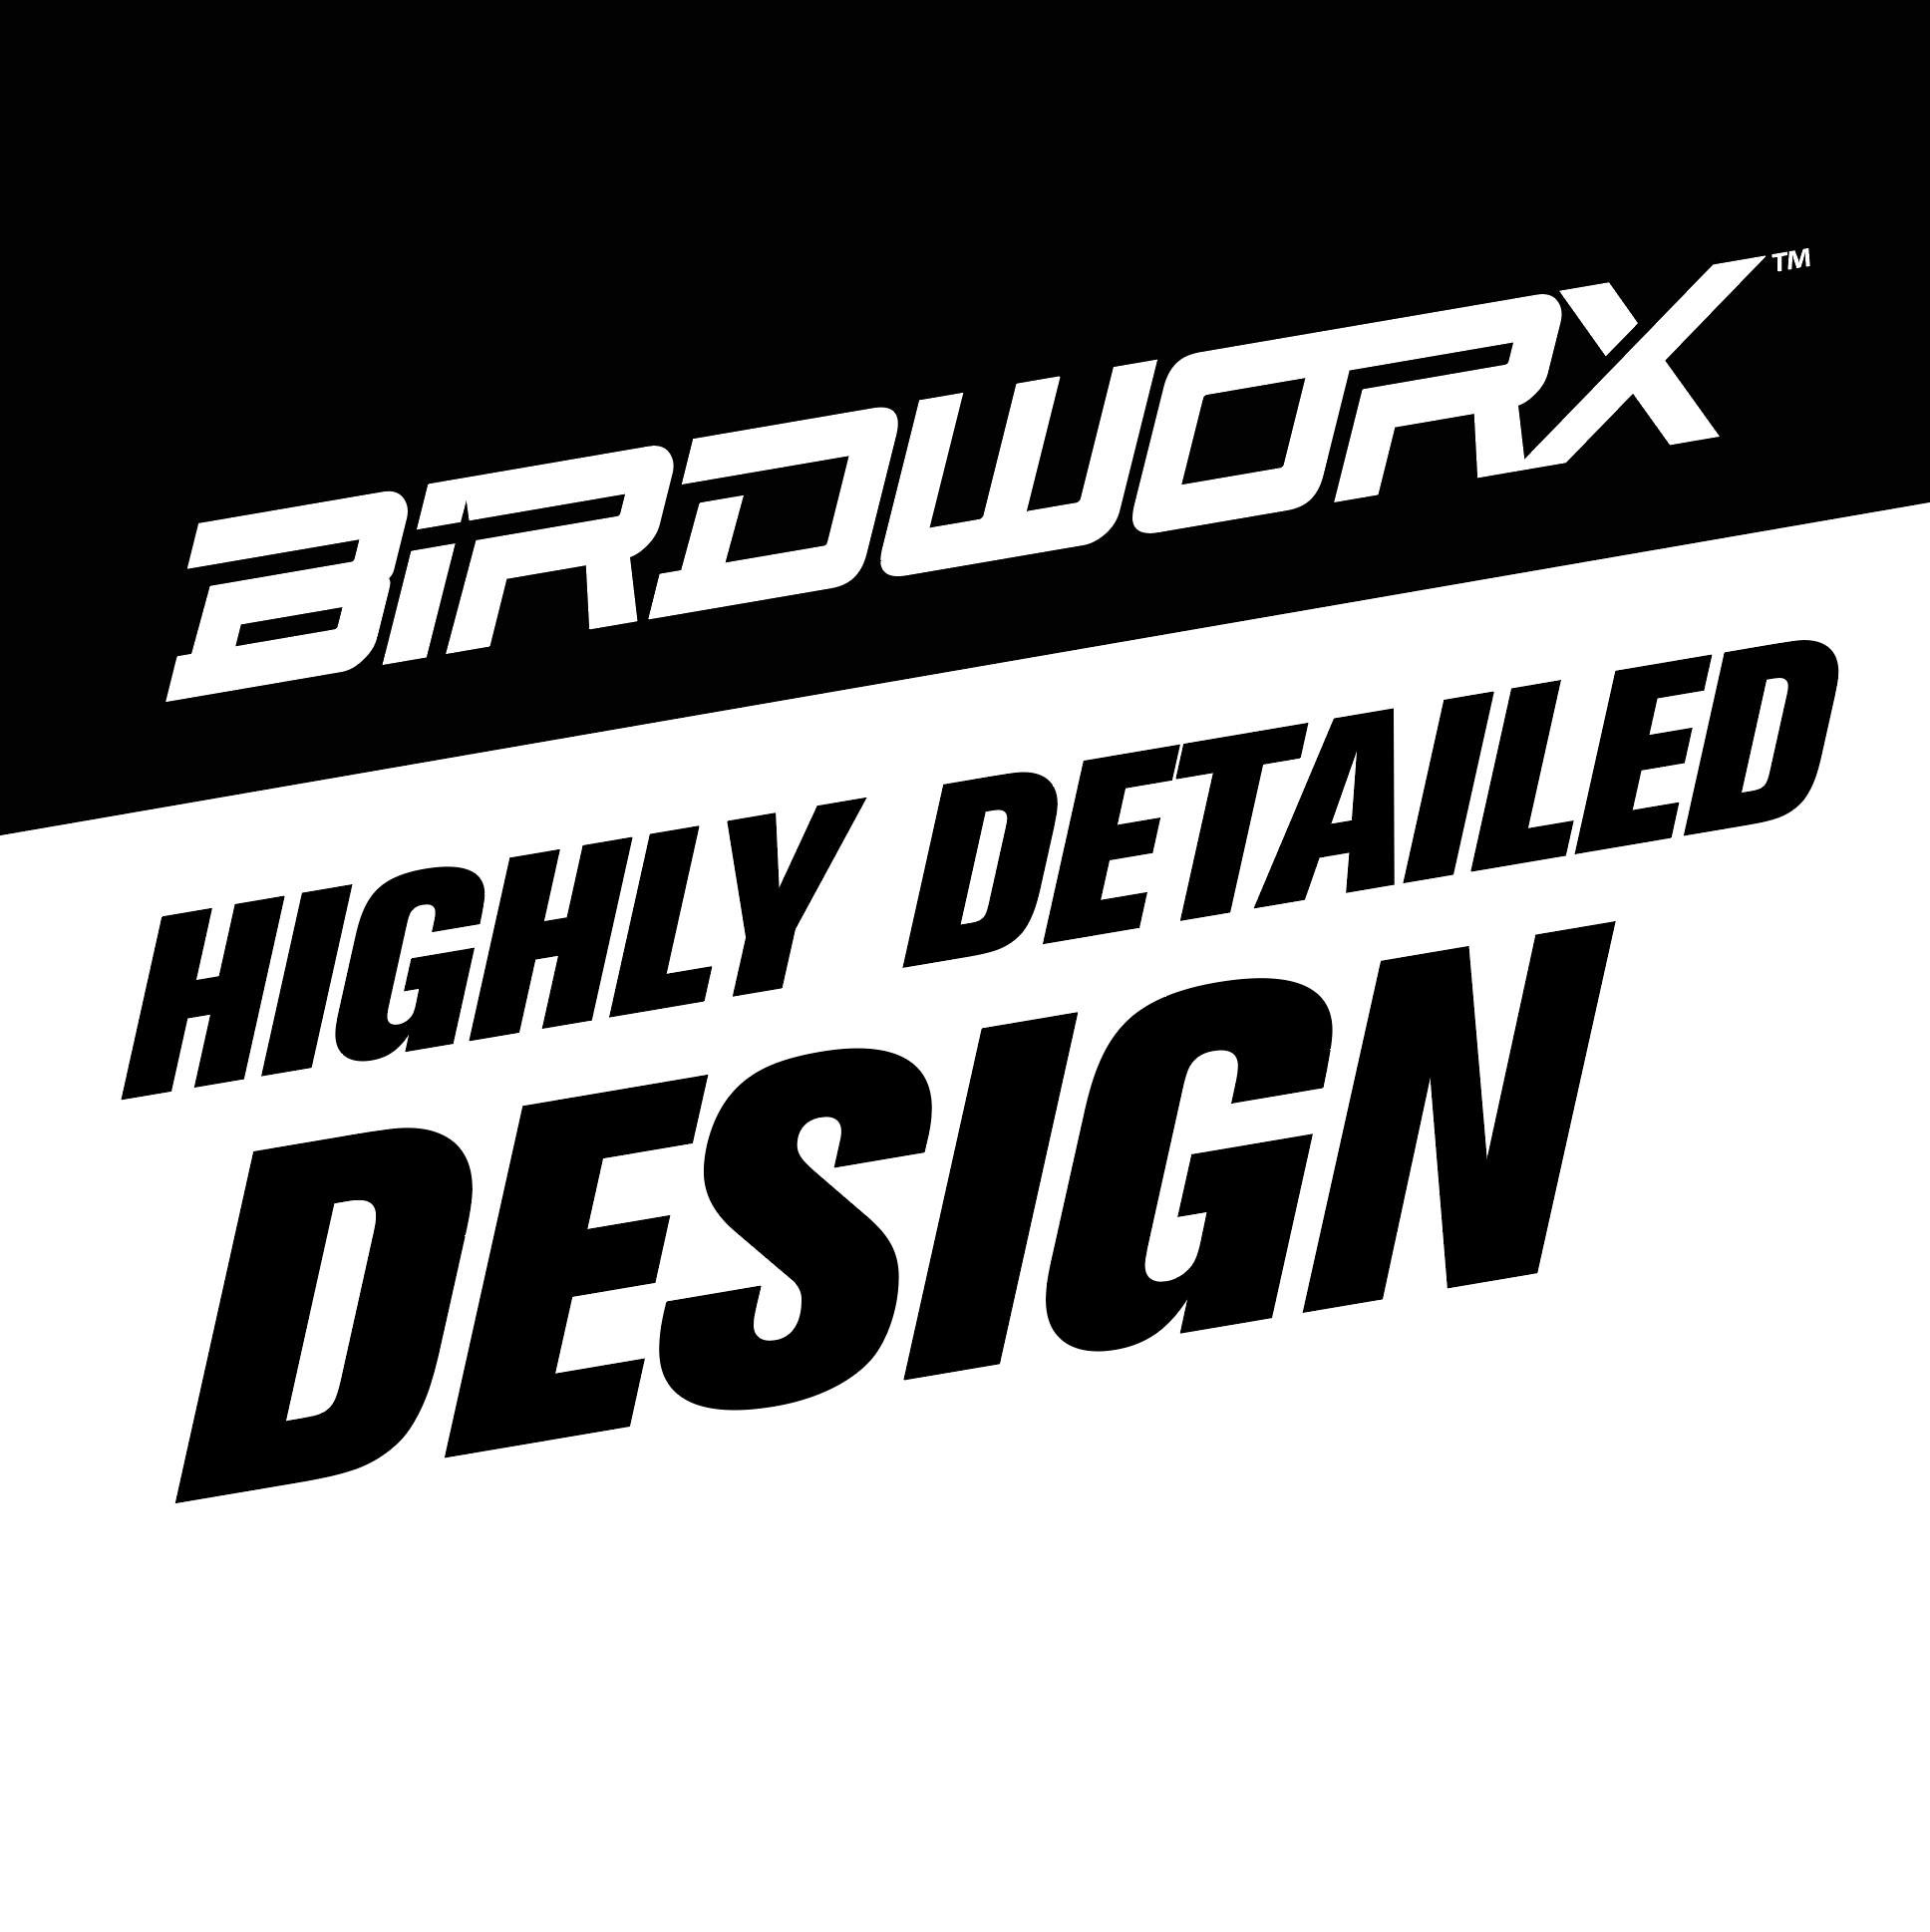 Birdworx Highly Detailed Design - $75